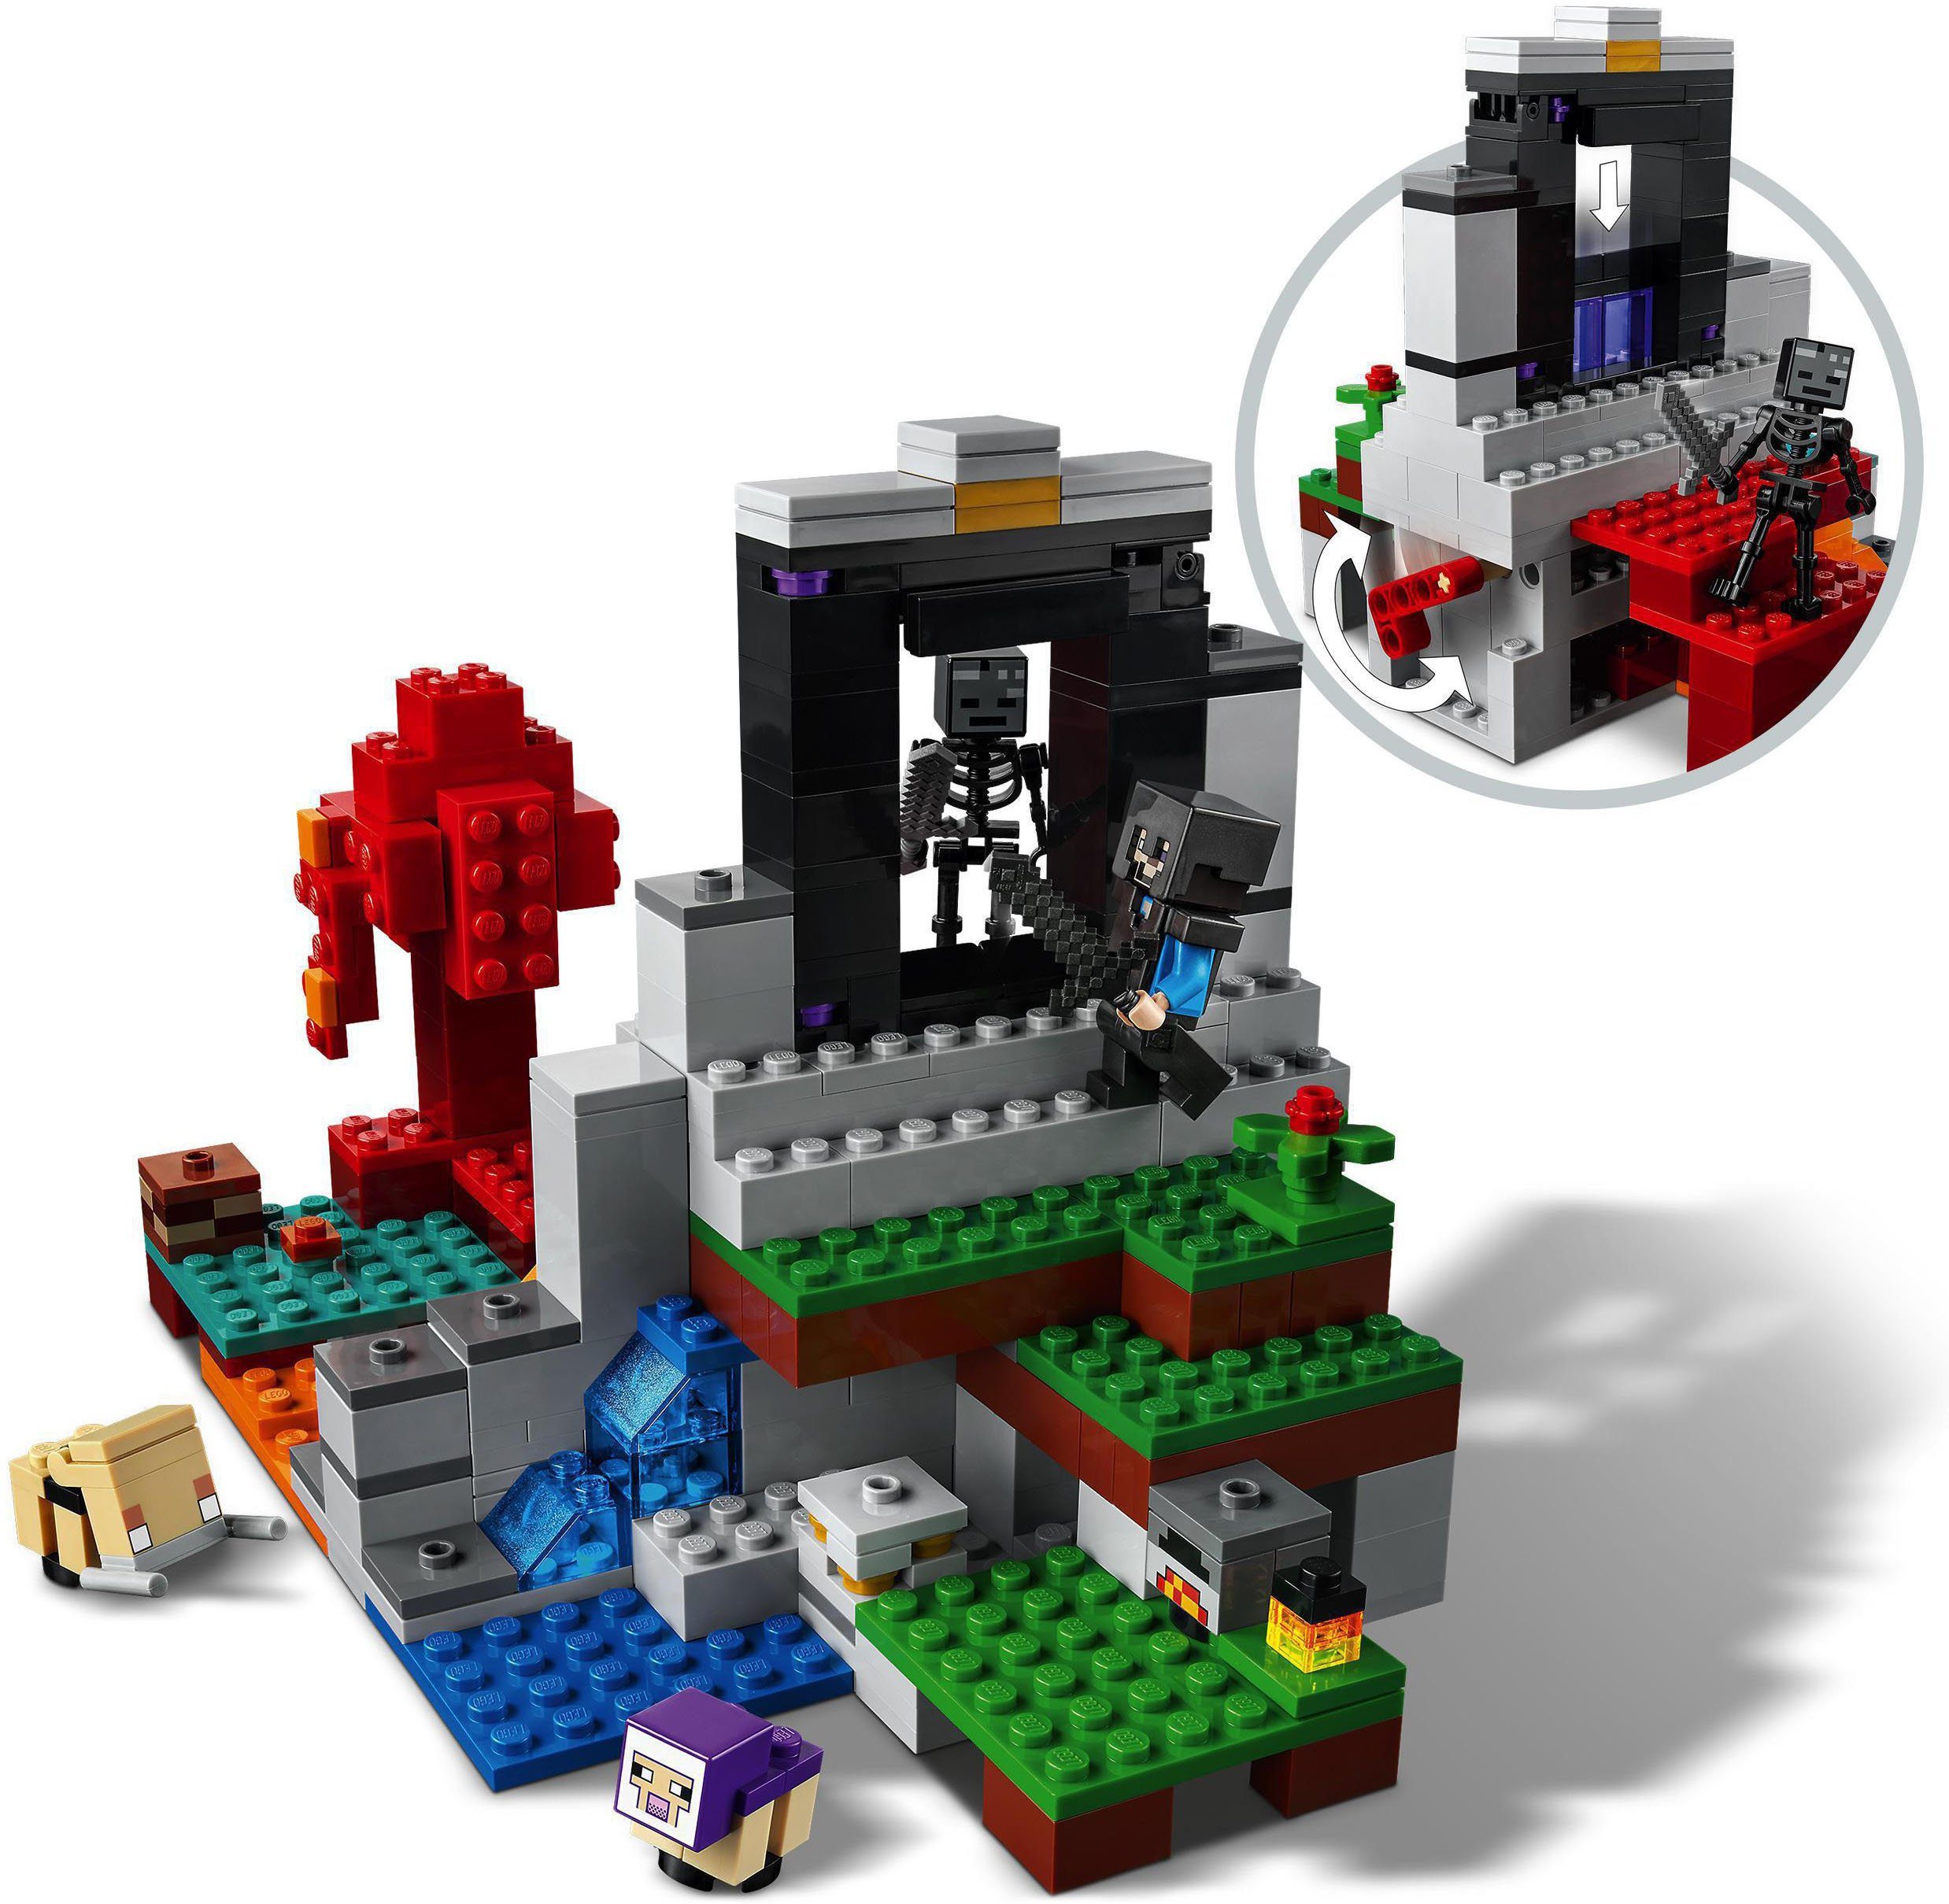 (21172), Minecraft™, (316 Europe Konstruktionsspielsteine zerstörte LEGO® Made St), LEGO® Portal Das in